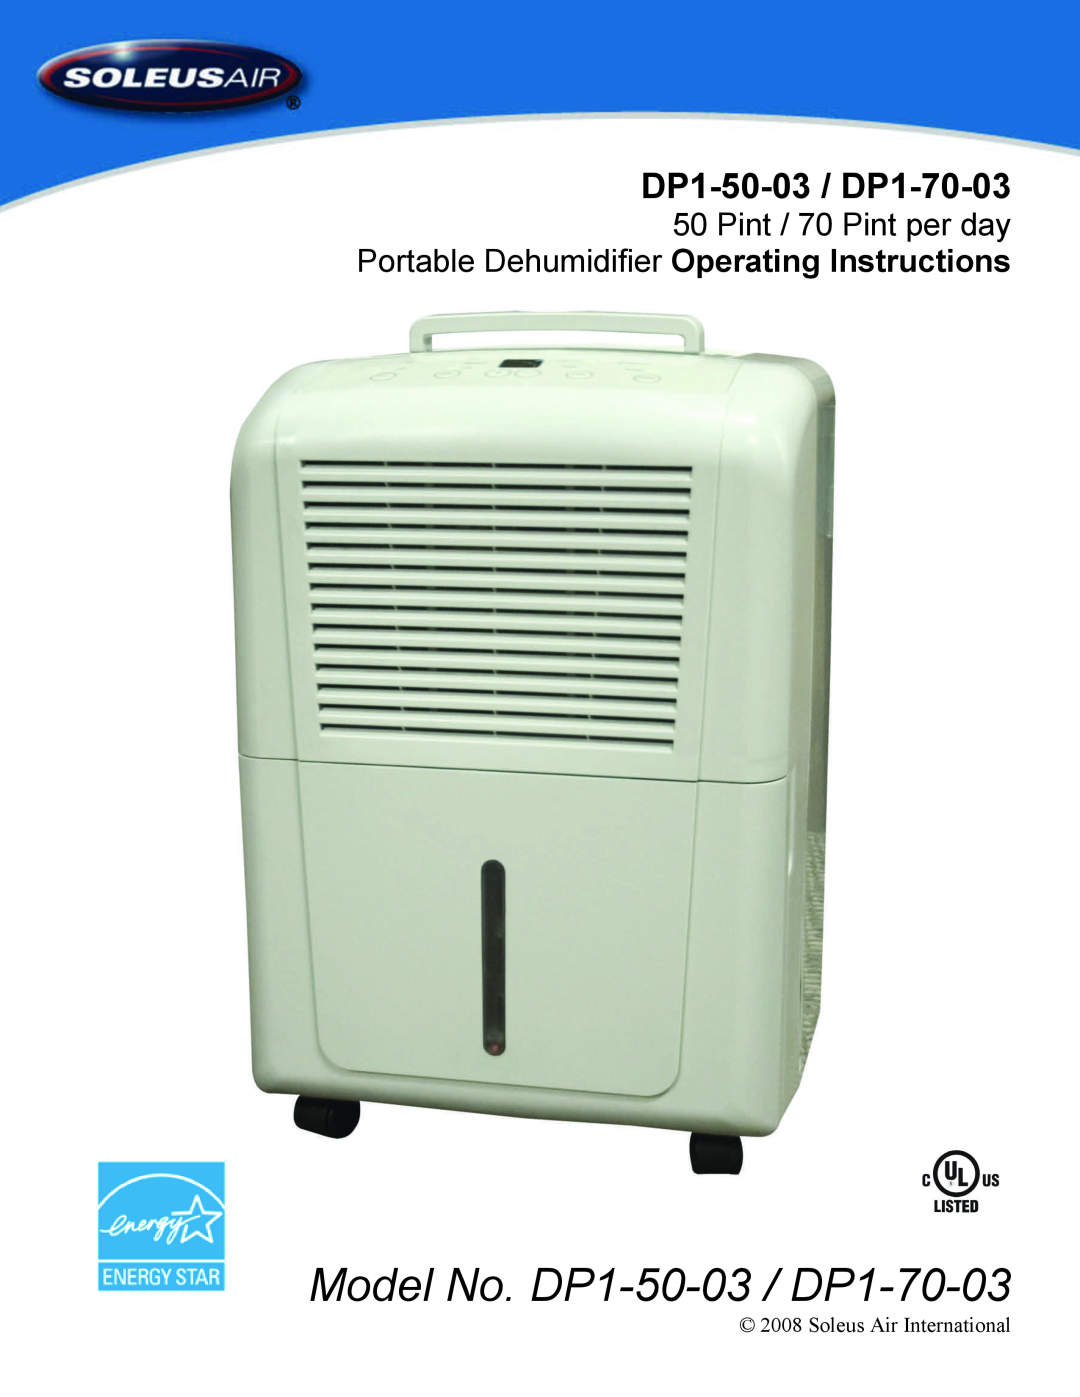 Soleus Air manual Model No. DP1-50-03 / DP1-70-03, Pint / 70 Pint per day, Portable Dehumidifier Operating Instructions 